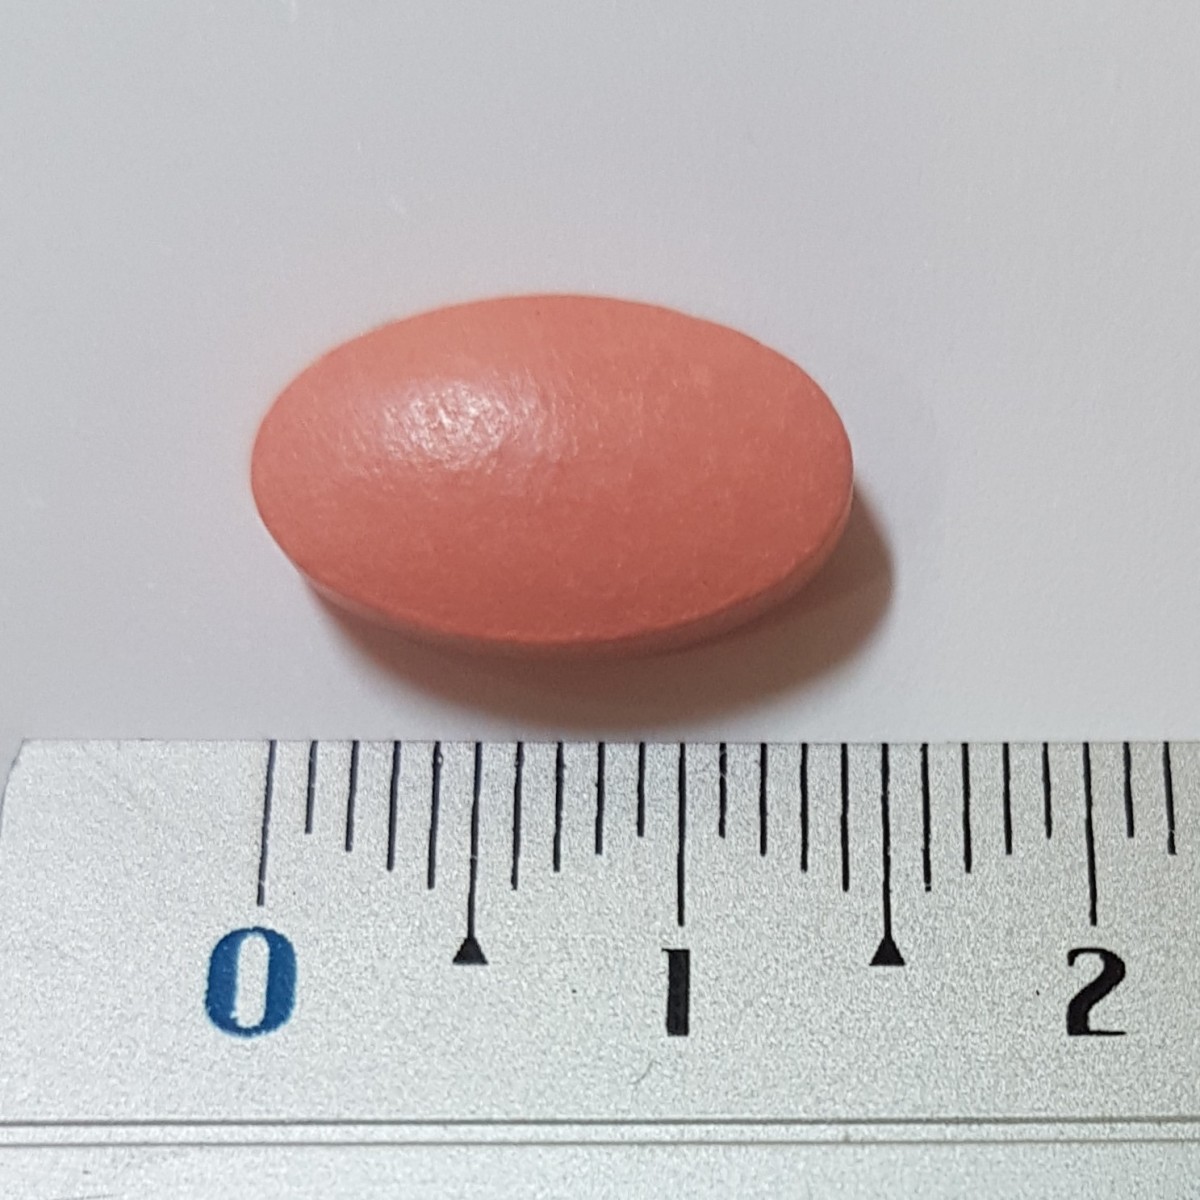 SIMVASTATINA VEGAL 40 mg COMPRIMIDOS EFG, 28 comprimidos fotografía de la forma farmacéutica.